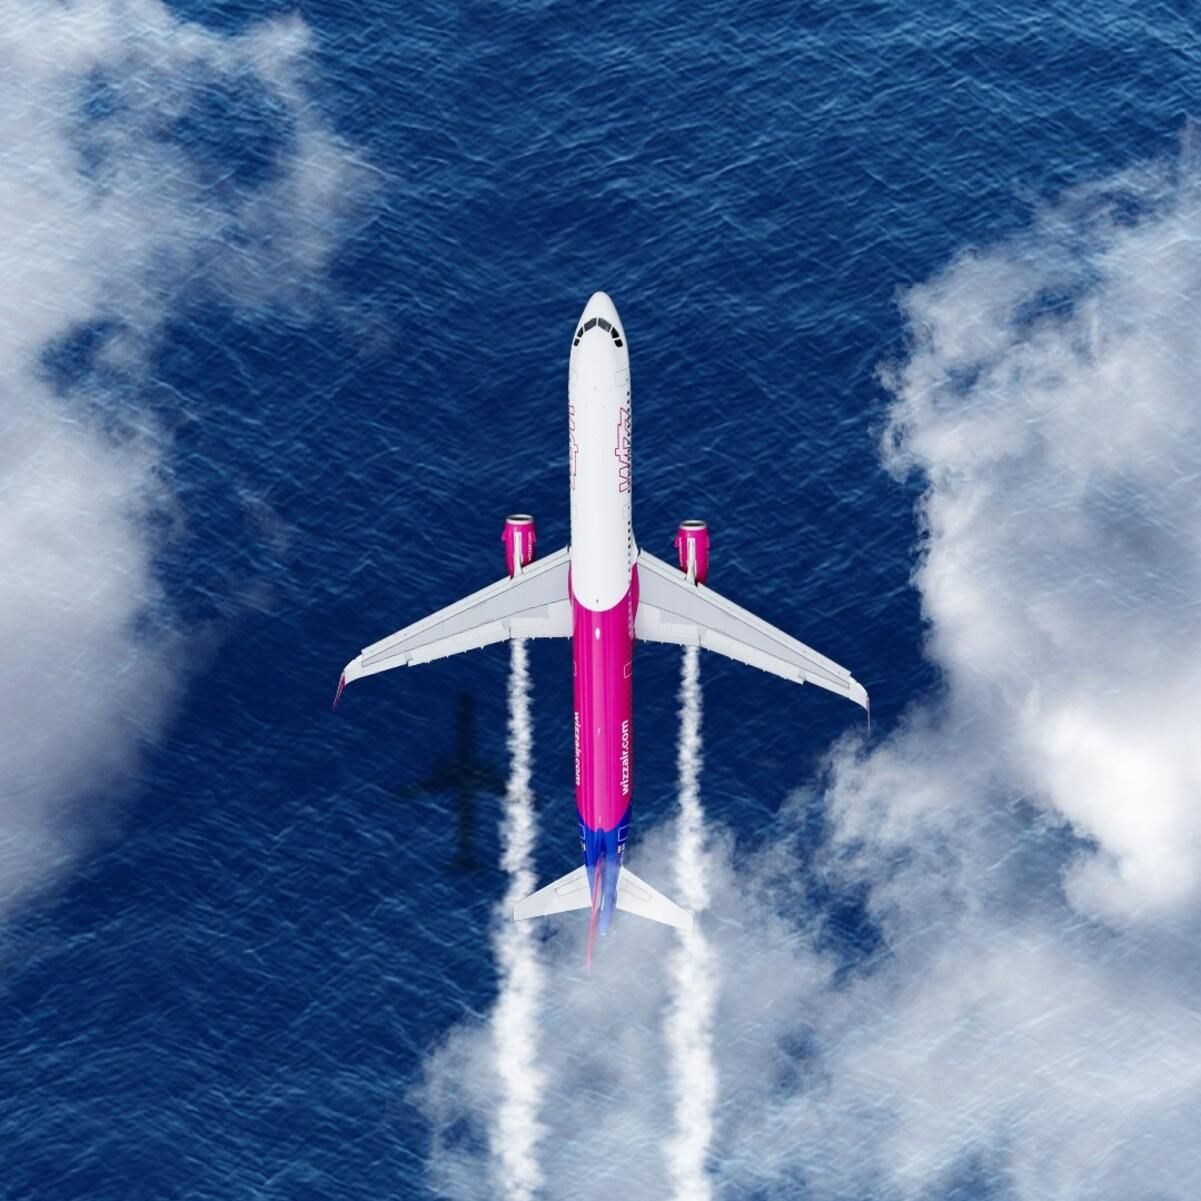  Wizz Air не будет повышать стоимость авиабилетов, а наоборот – снизит